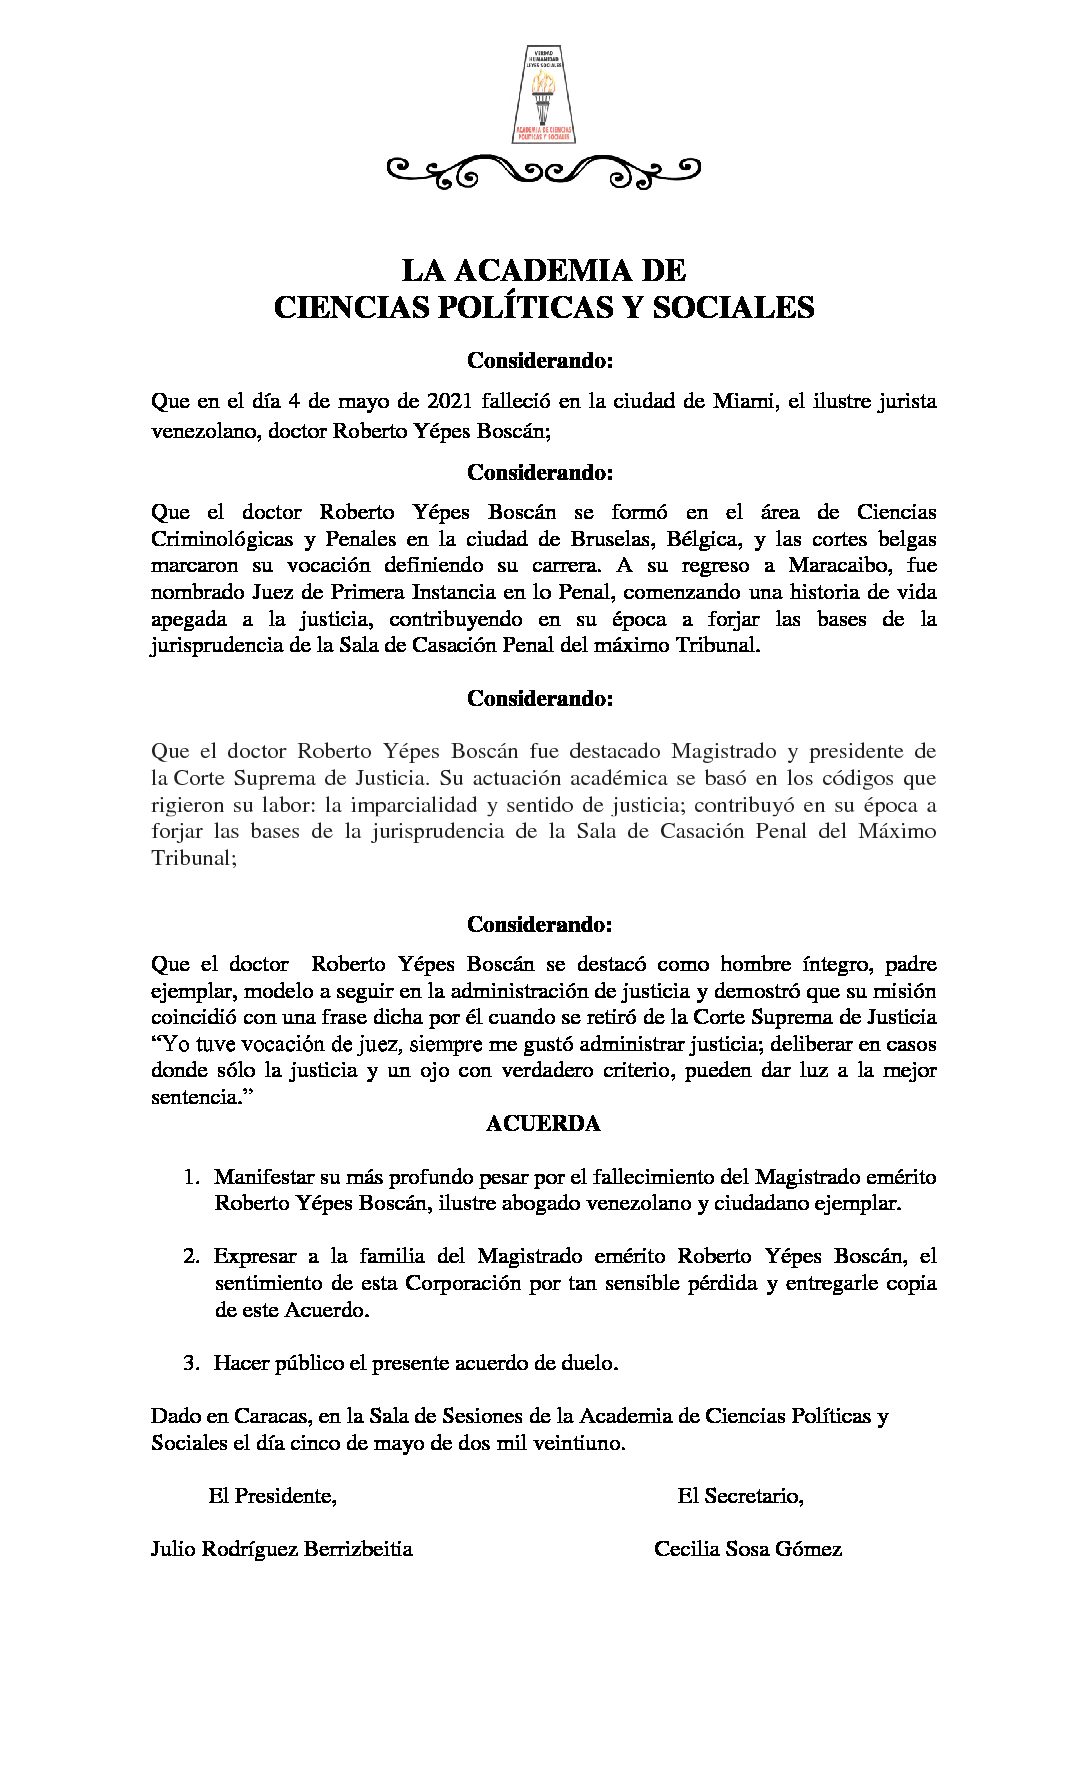 Acuerdo de duelo con ocasión del lamentable fallecimiento del Dr. Roberto Yépes Boscán